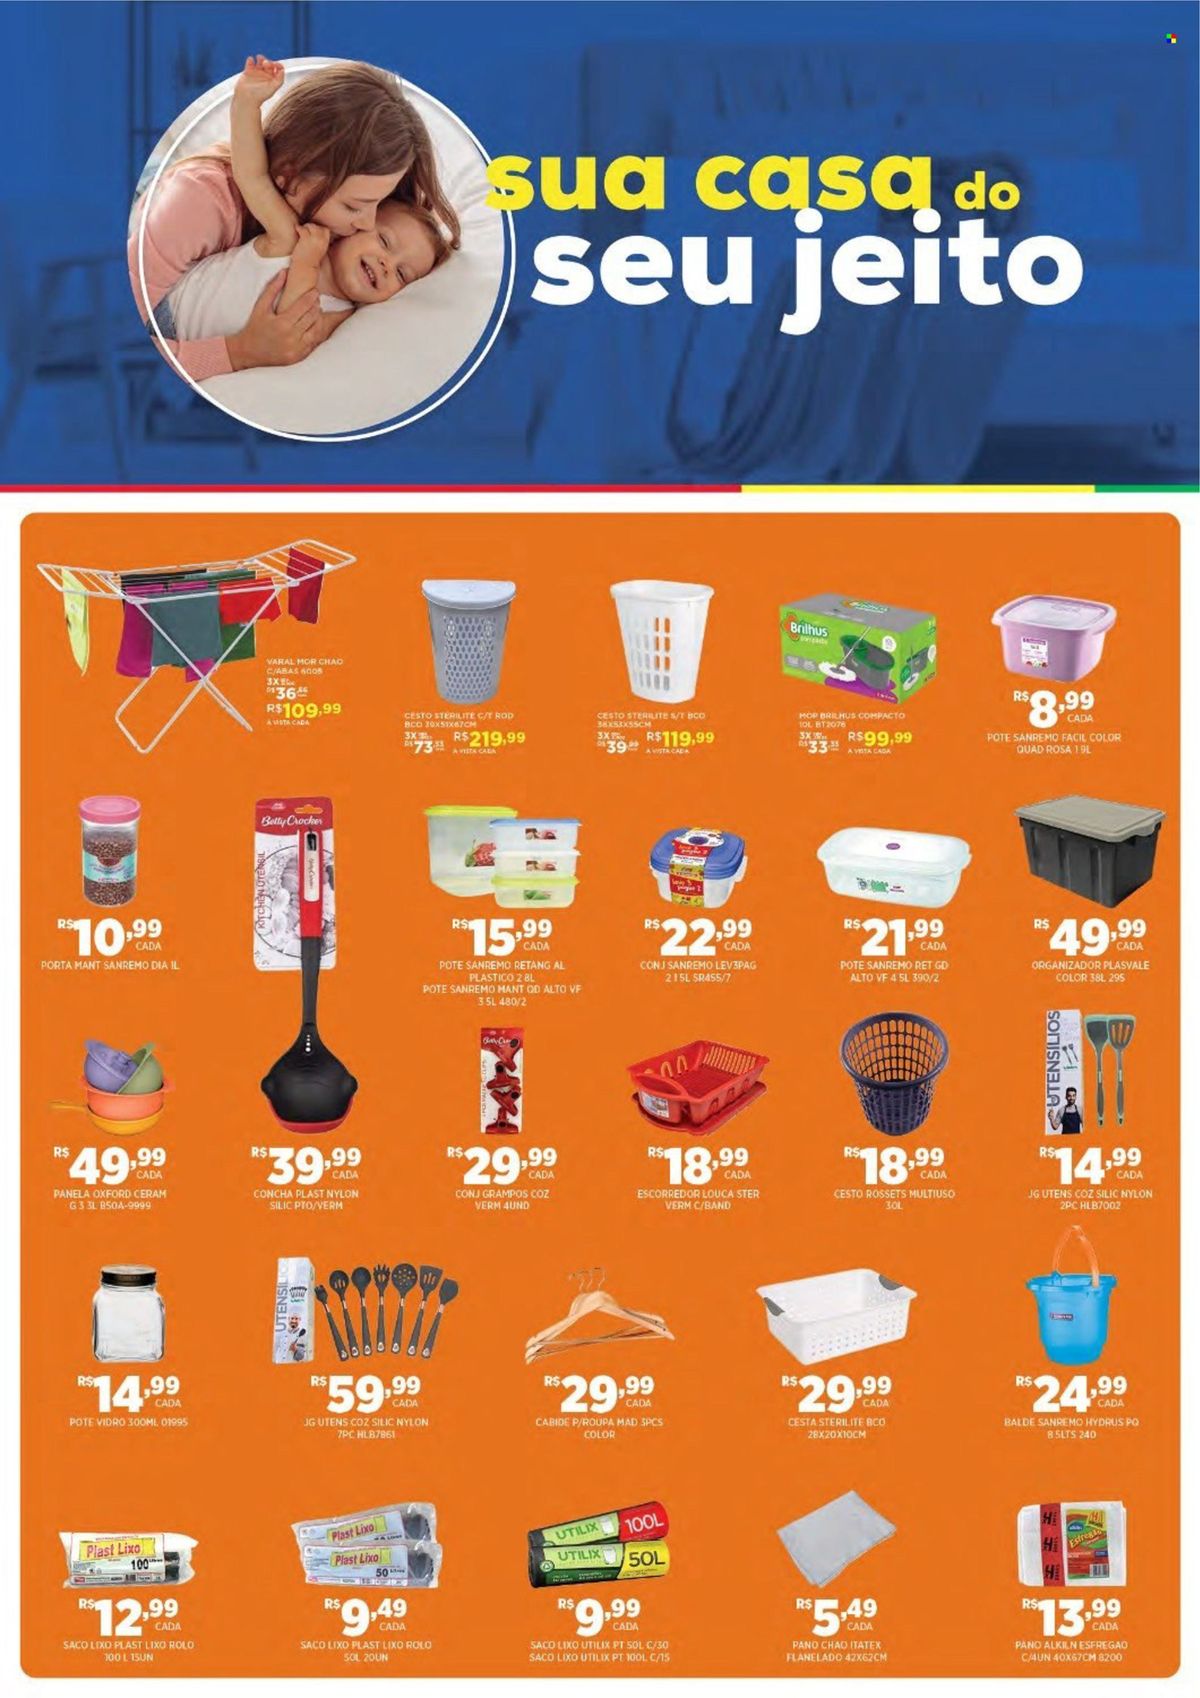 Ofertas de Supermercados: Produtos de Limpeza, Utensílios de Cozinha e Decoração